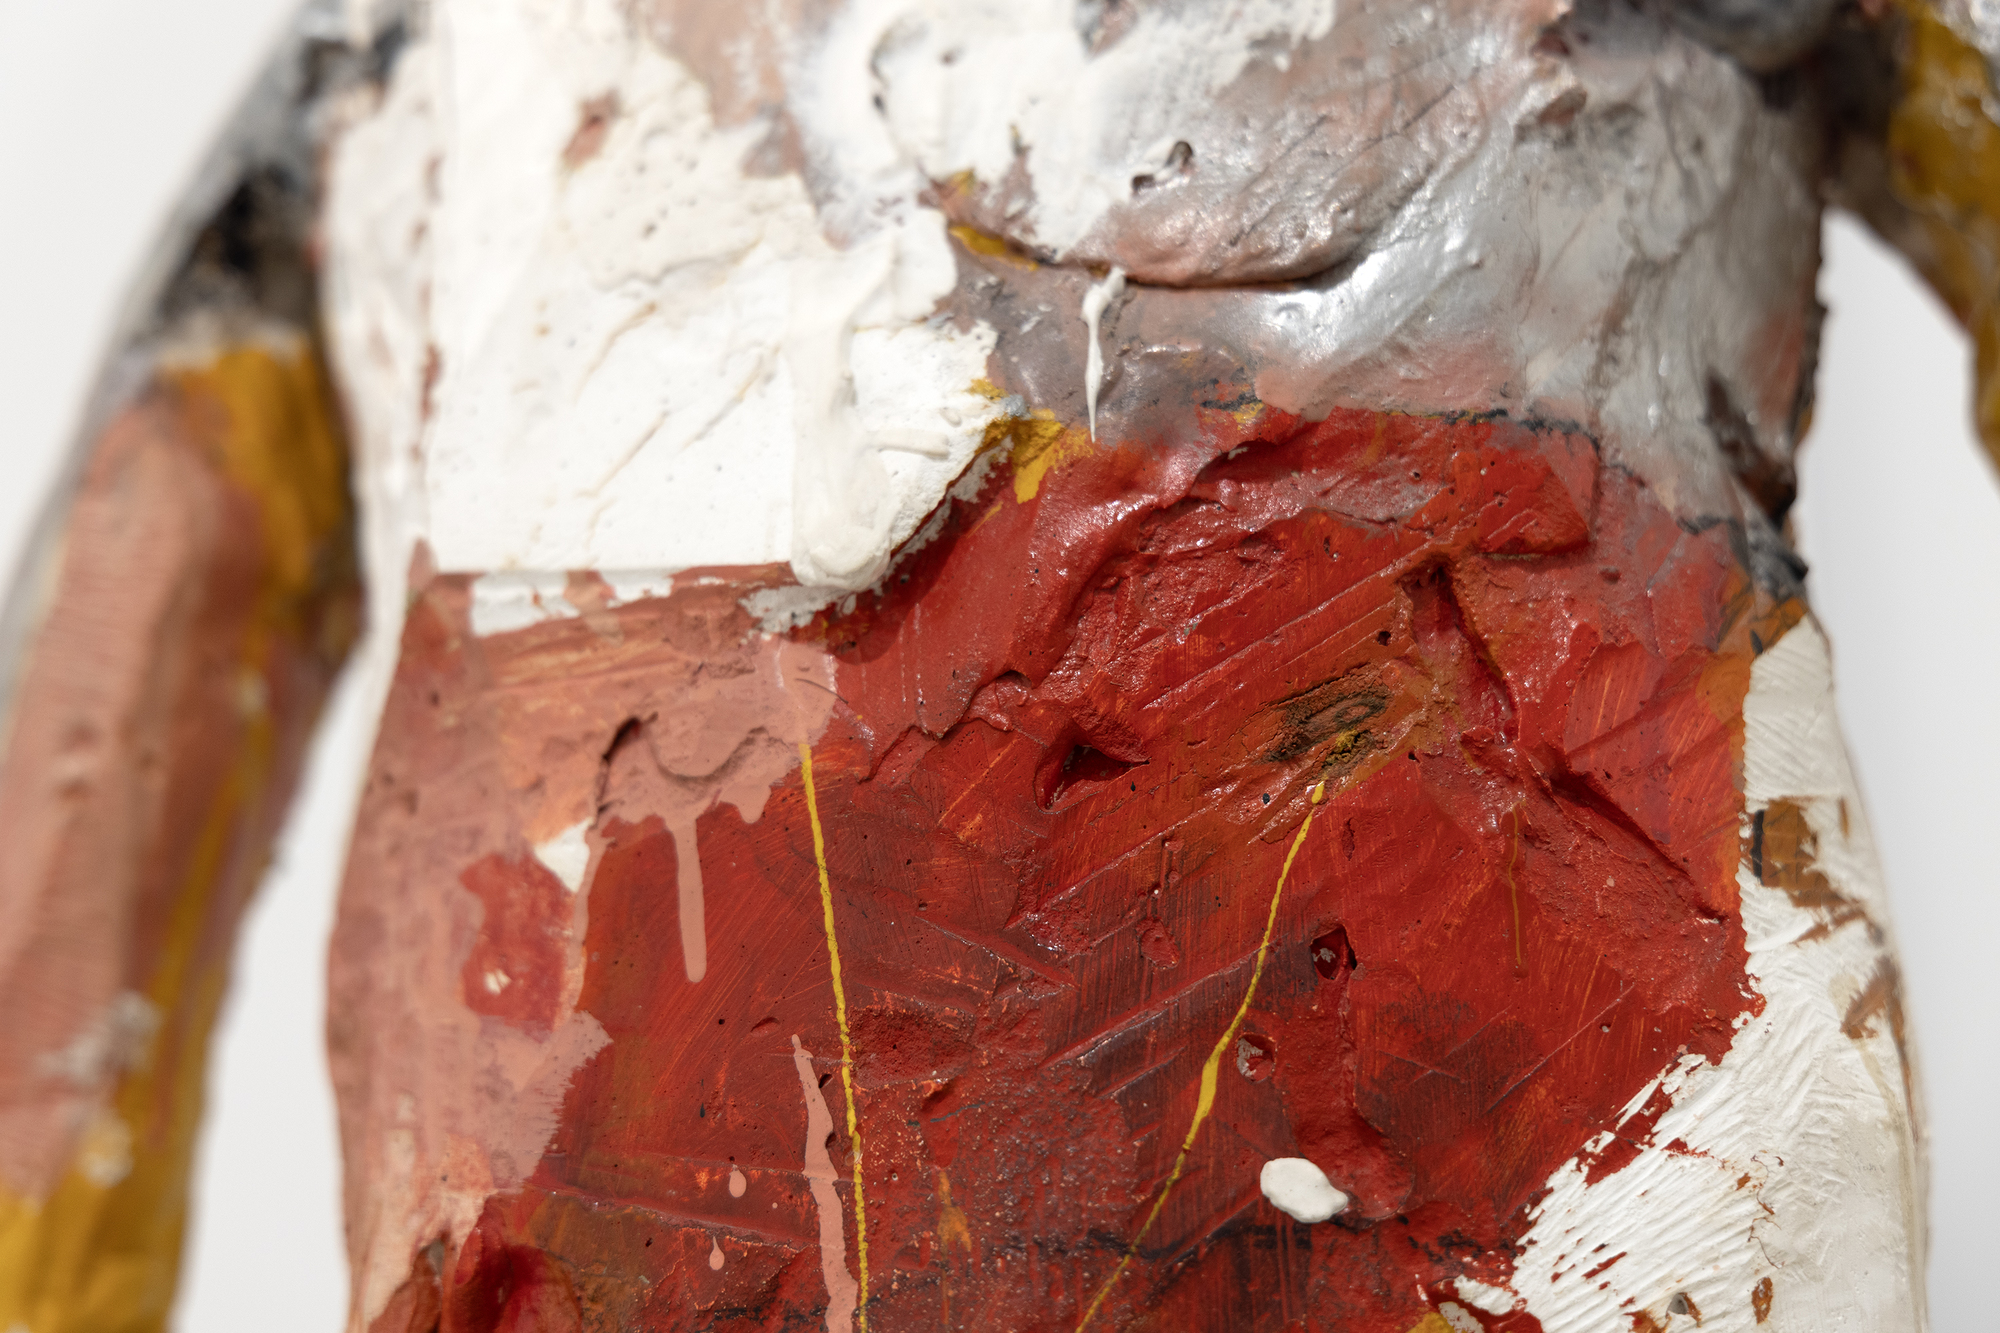 עבודות הנייר המוקדמות של מנואל נרי פרצו דרך בטכניקה פיסולית, וגישתו לציור פסליו משקפת את עיסוקו העמוק בפוטנציאל האקספרסיבי של צבע וצורה. הבחירה והמיקום של הצבעים בהומברה קולורדו II יוצרים תגובה קרבית במיוחד המשקפת את הבנתו רבת הניואנסים את הממד הפסיכולוגי והרגשי של הצבע. הומברה קולורדו השני, שתוכנן והופק בשנת 1958, משקף תקופה שבה נרי ואשתו ג&#039;ואן בראון עסקו בחילופי יצירתיות אמנותיים עשירים ותרמו באופן משמעותי להתפתחות הסגנונות שלהם והתנועה הפיגורטיבית של אזור המפרץ, שבה מילאו תפקידים חיוניים.